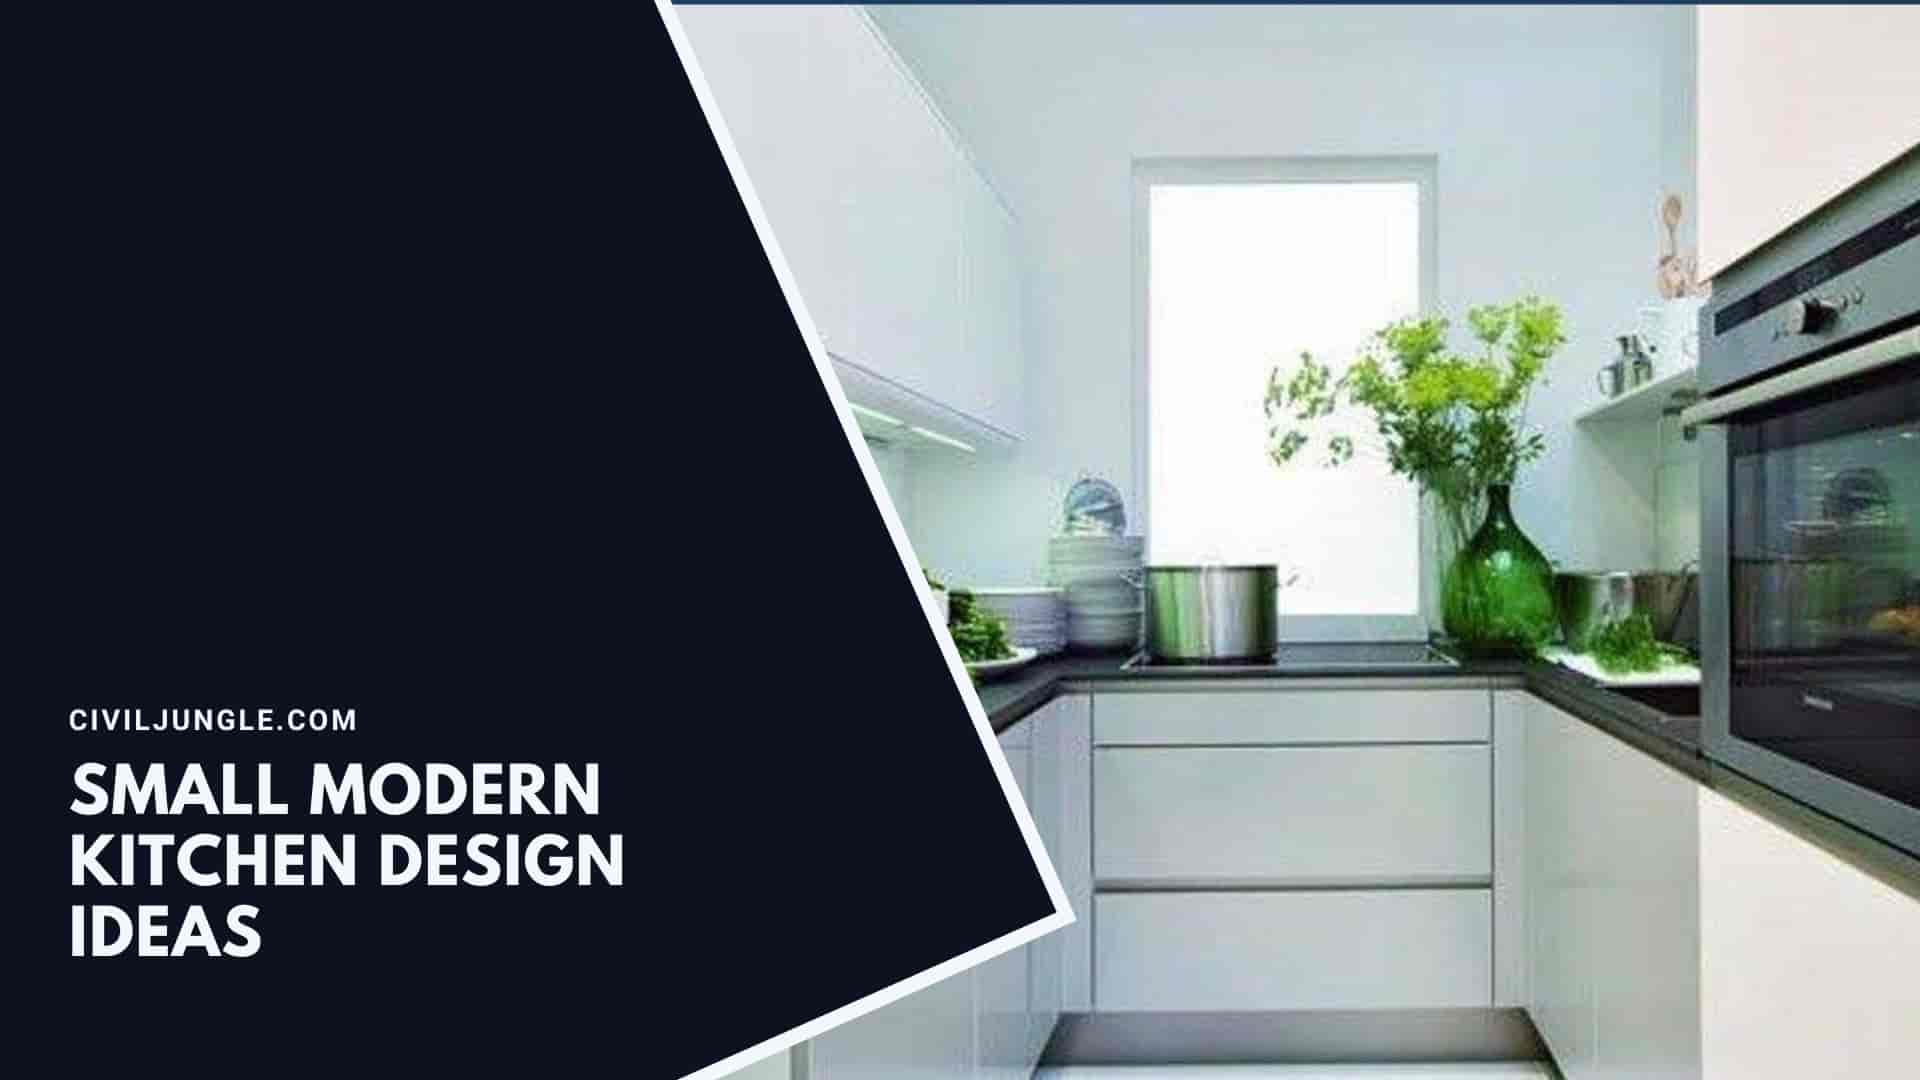 Small Modern Kitchen Design Ideas